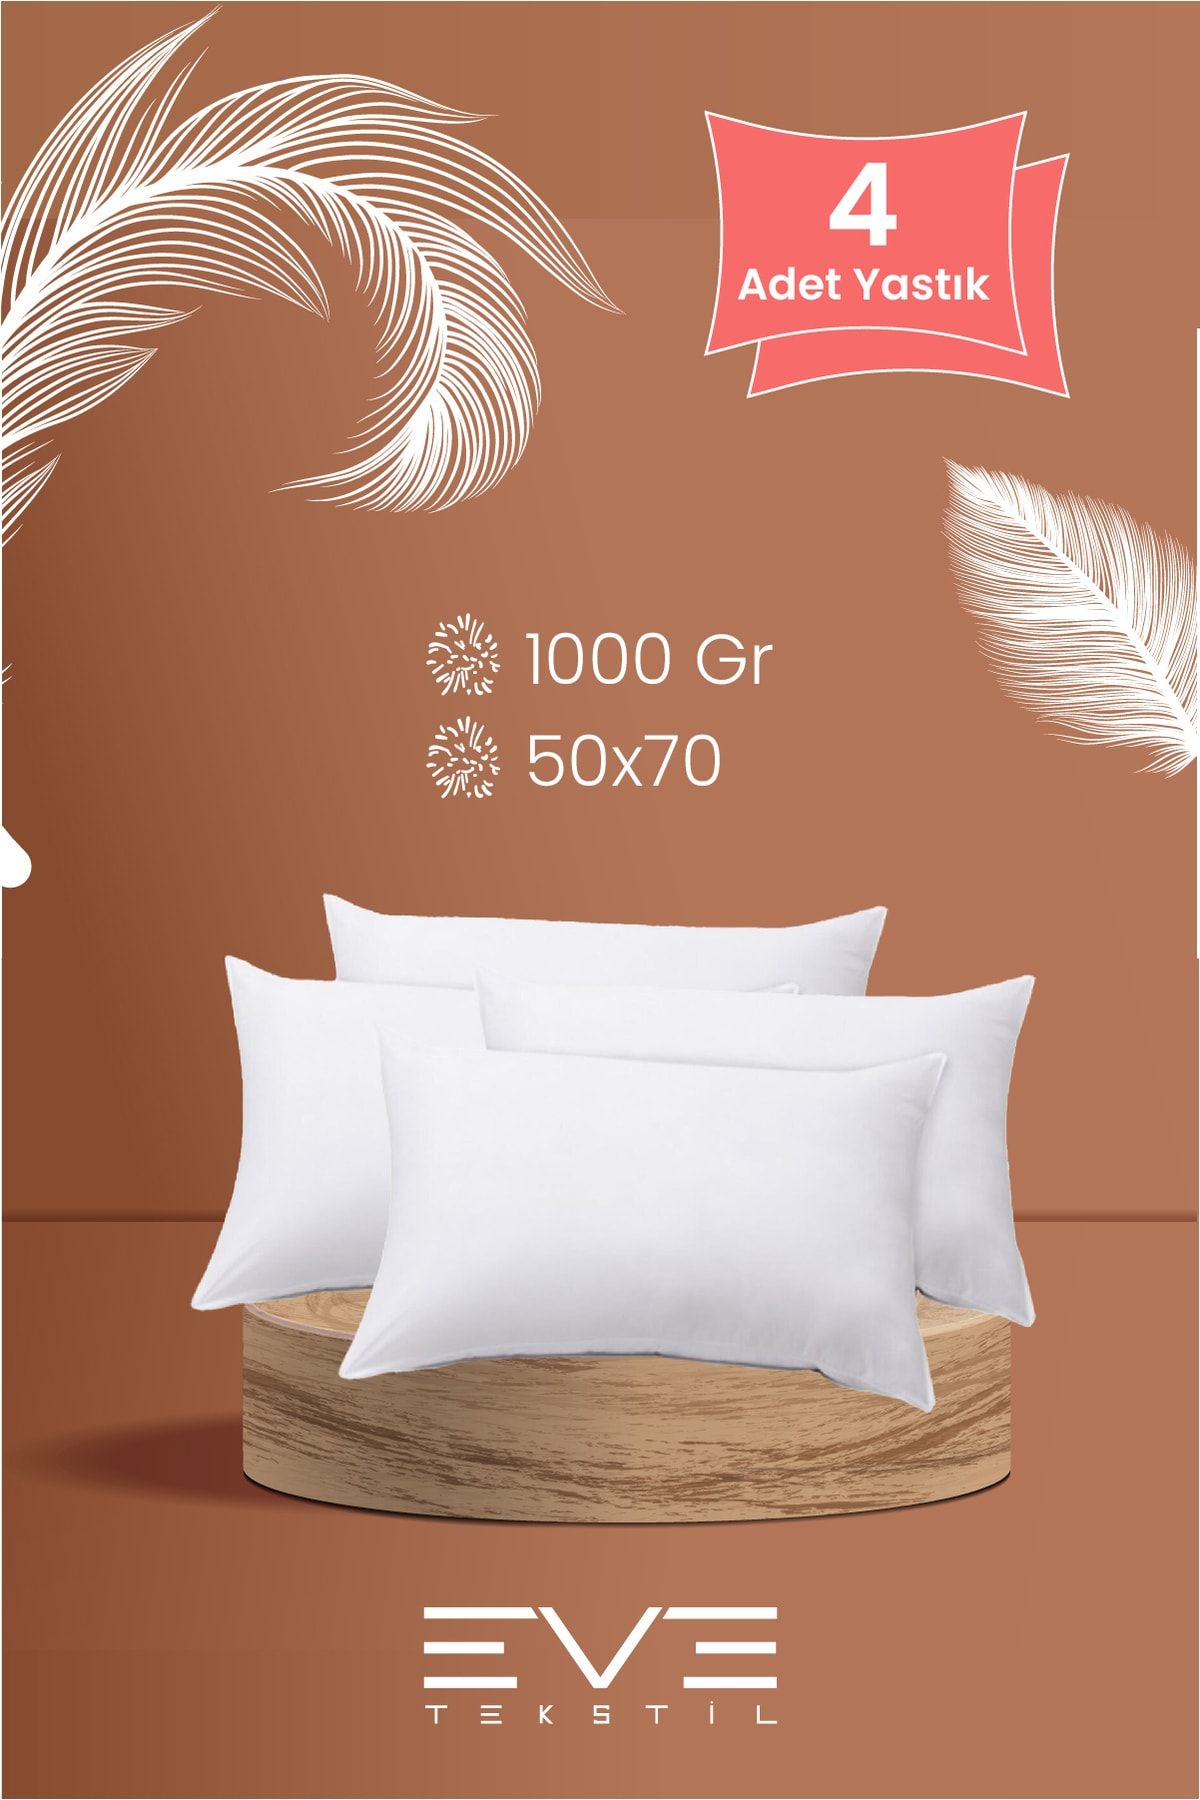 Eve Tekstil 4 Adet Rollpack Yastık Mikrosilikon 1000 gr